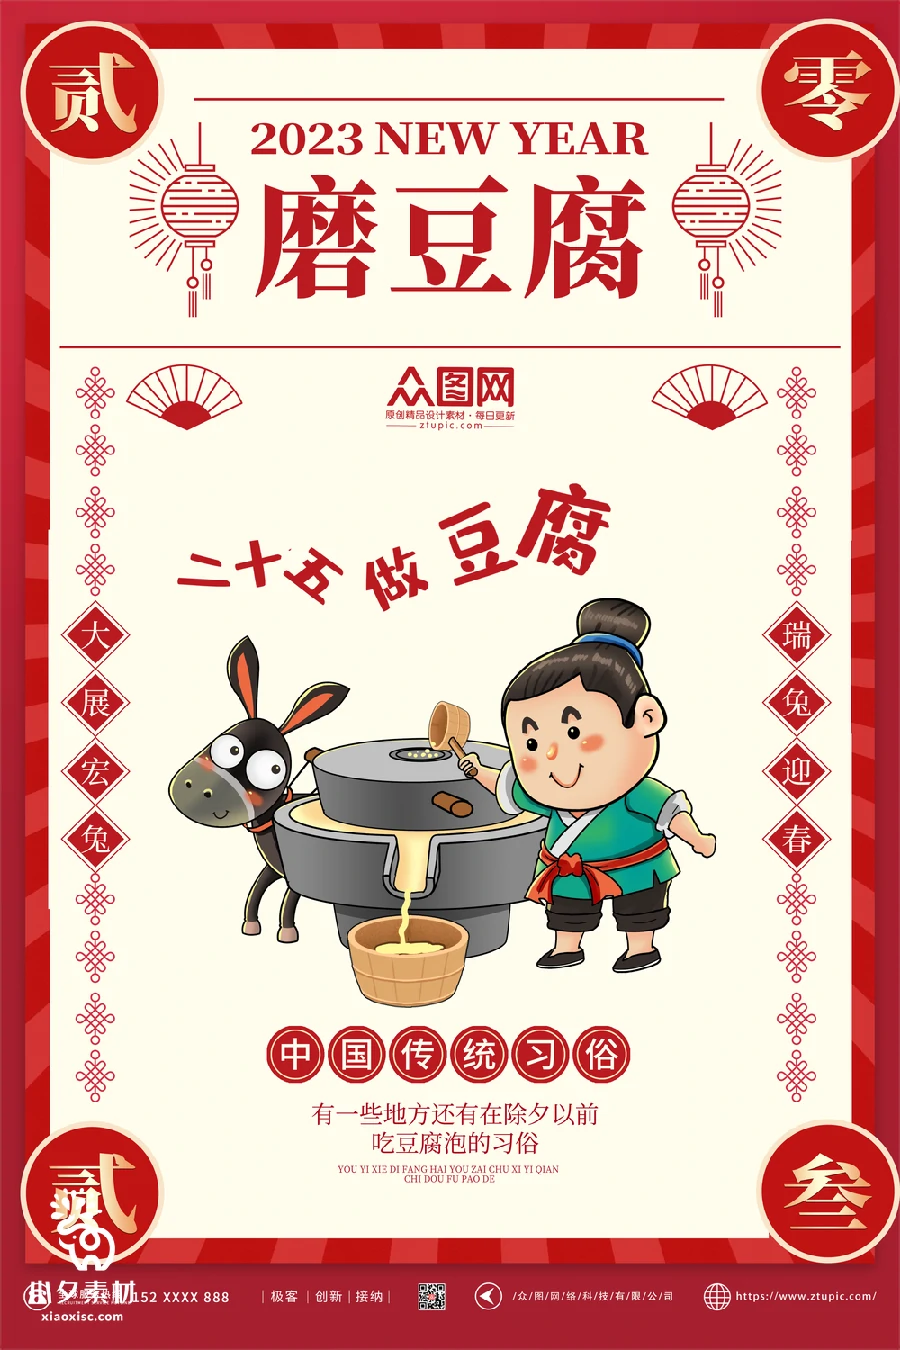 2023兔年新年传统节日年俗过年拜年习俗节气系列海报PSD设计素材【061】